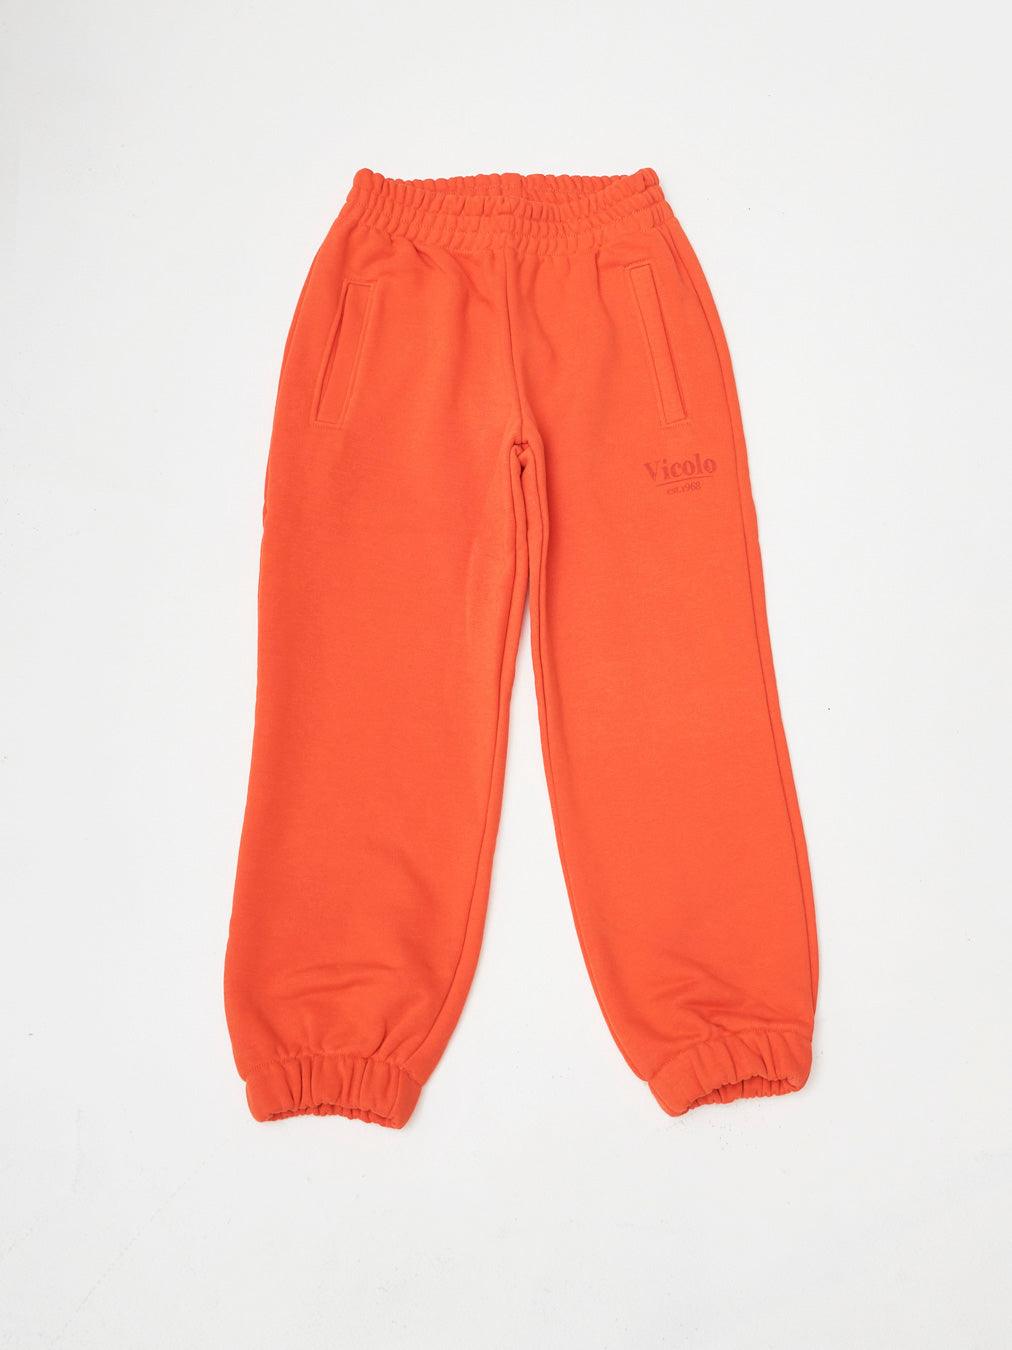 Vicolo kids pantaloni tuta  arancio